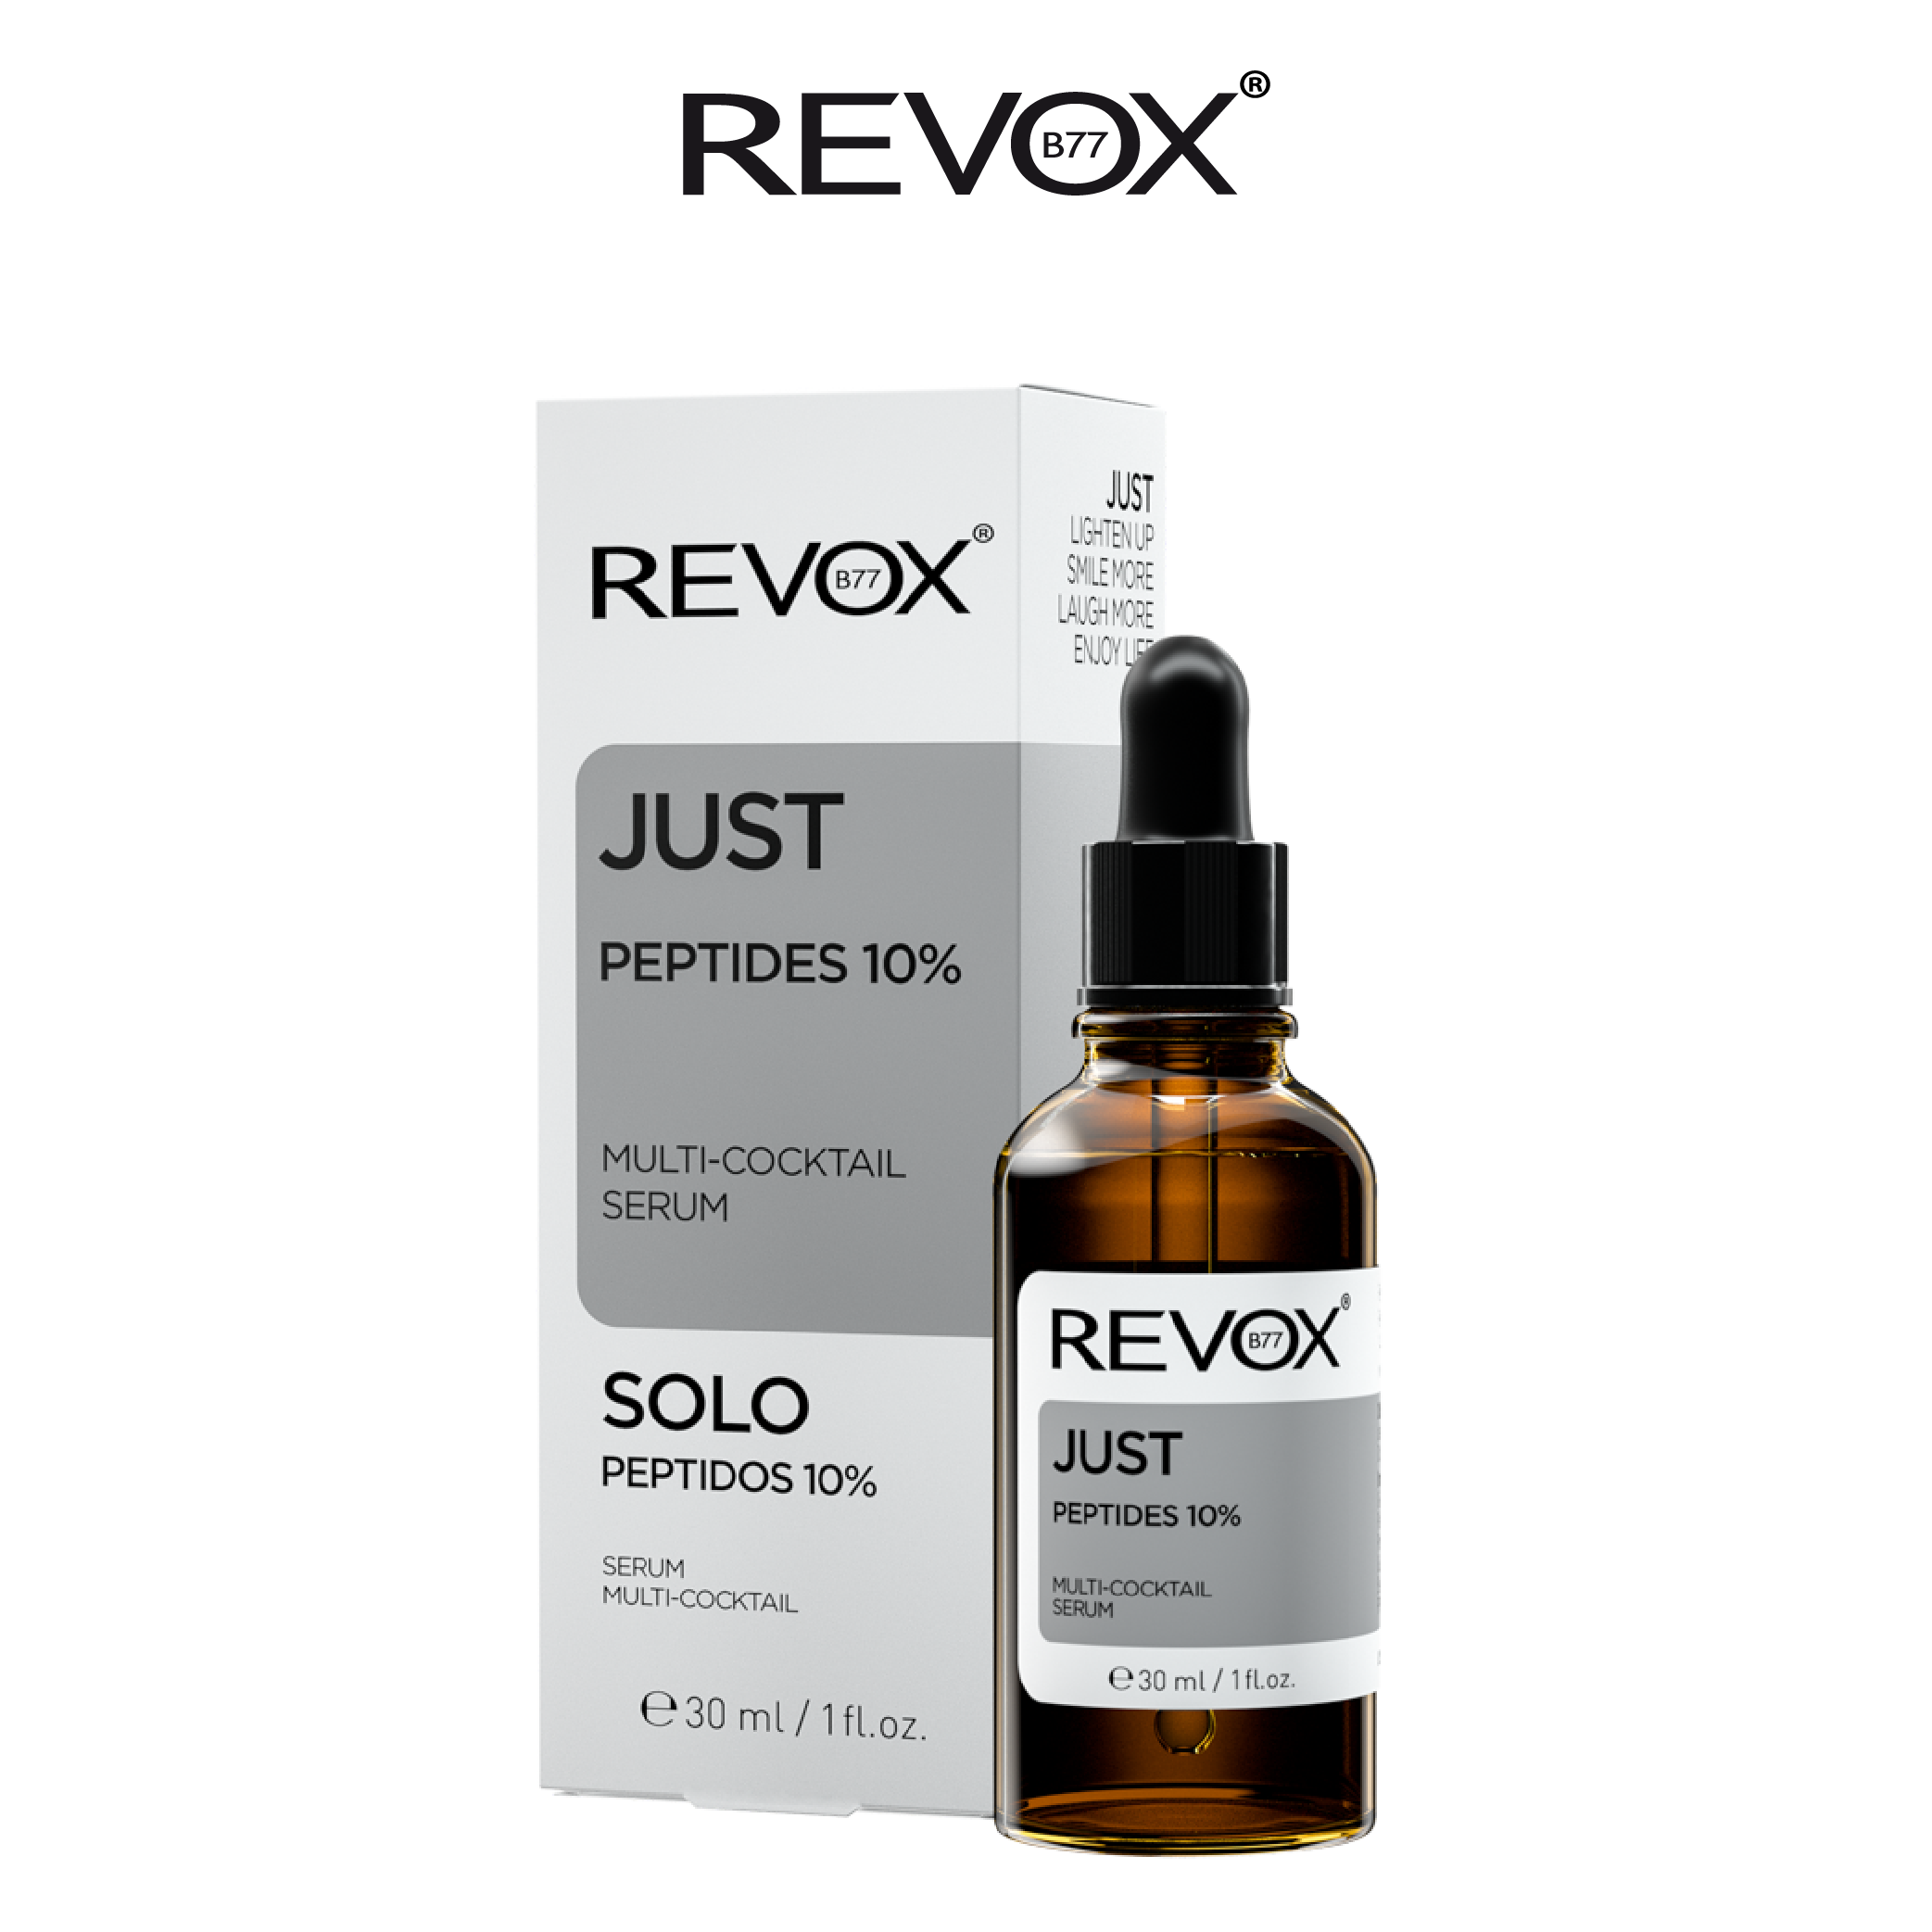 Serum hỗn hợp dành cho mặt và cổ Revox B77 Just - Peptides 10%